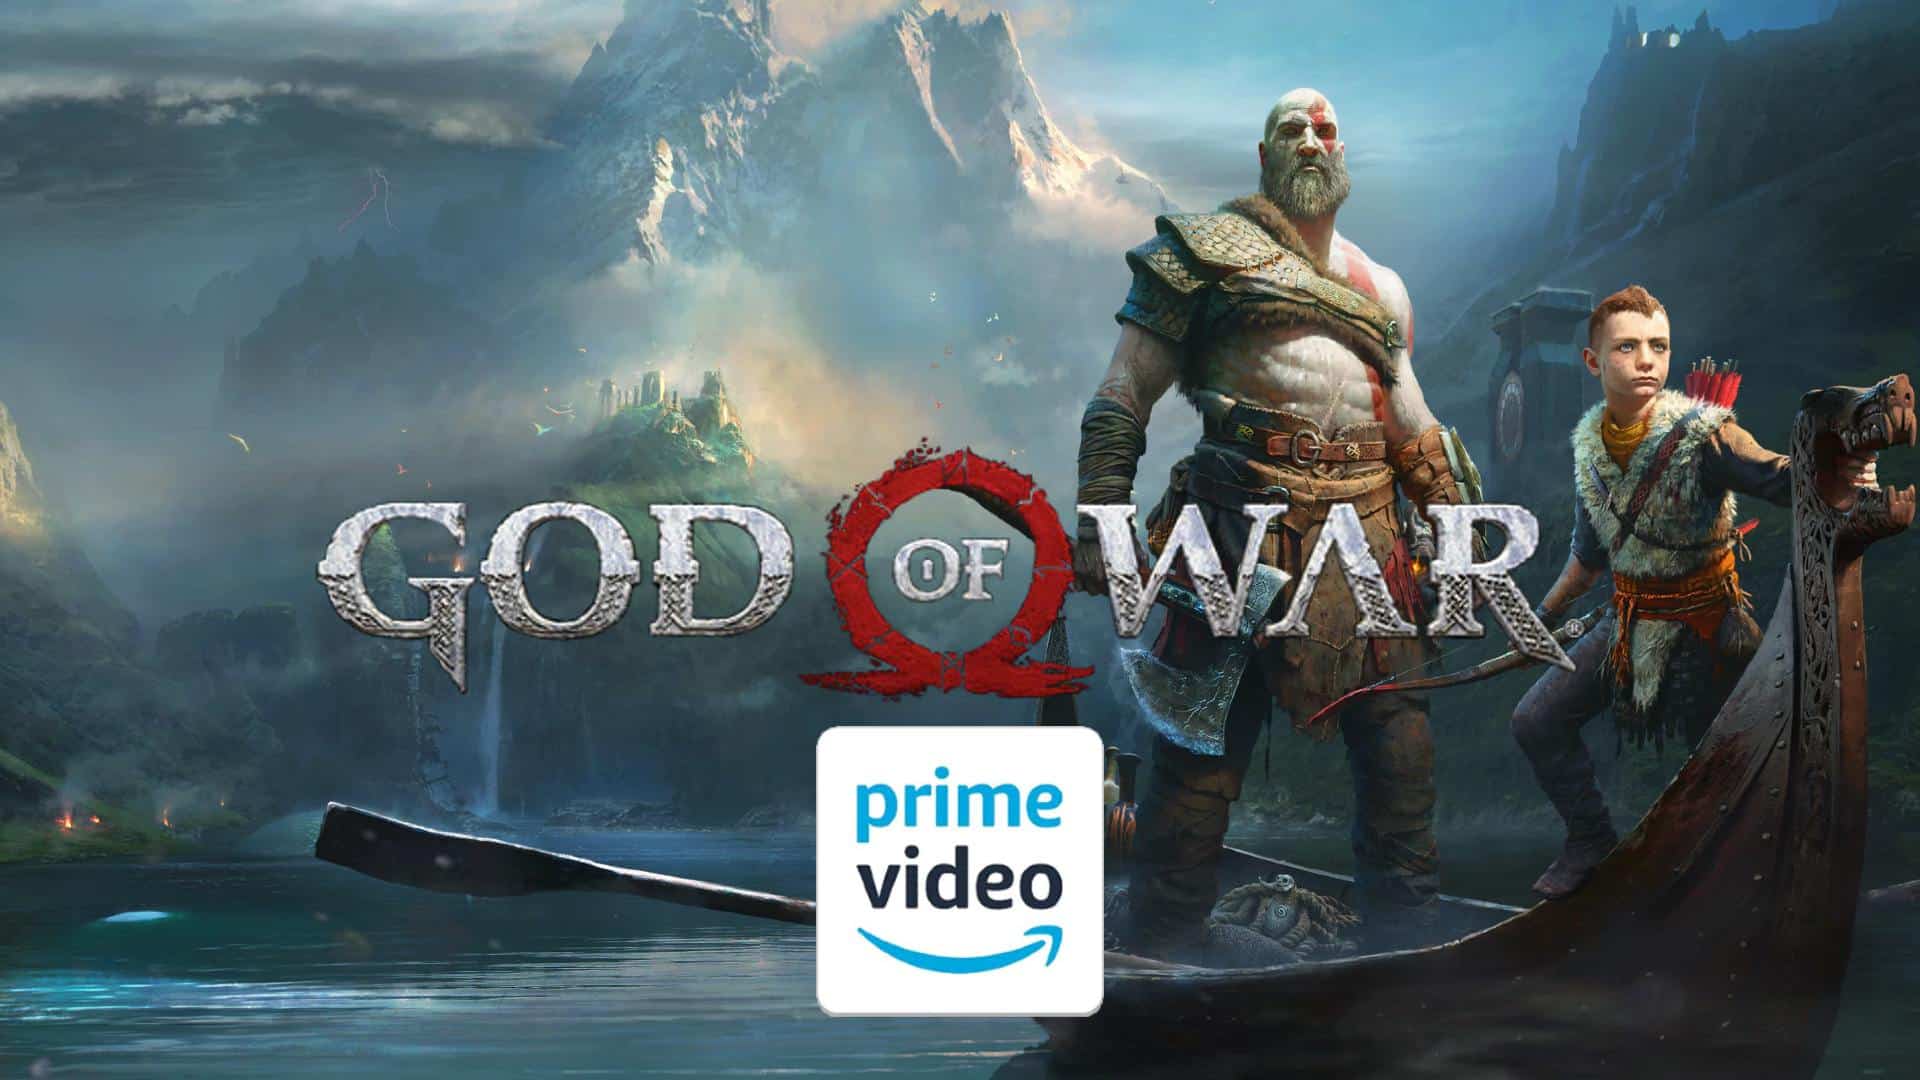 God of War: Ator que interpreta Atreus quer atuar na série do Prime Video -  Millenium